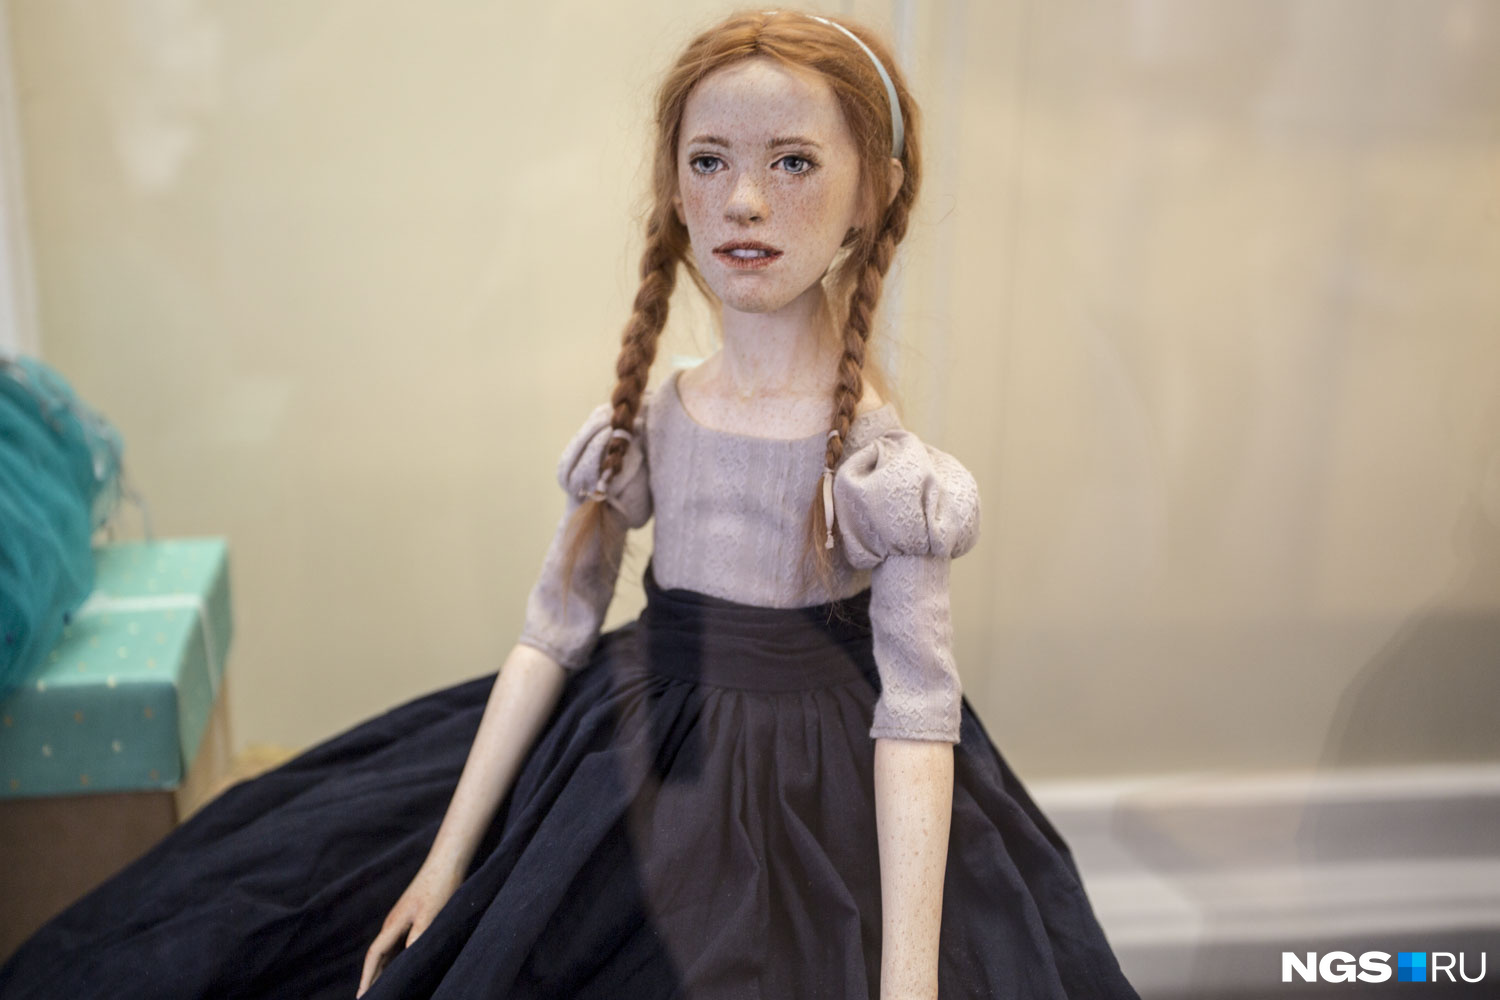 Цена на реалистичные фарфоровые куклы может достигать 80 тыс. руб.